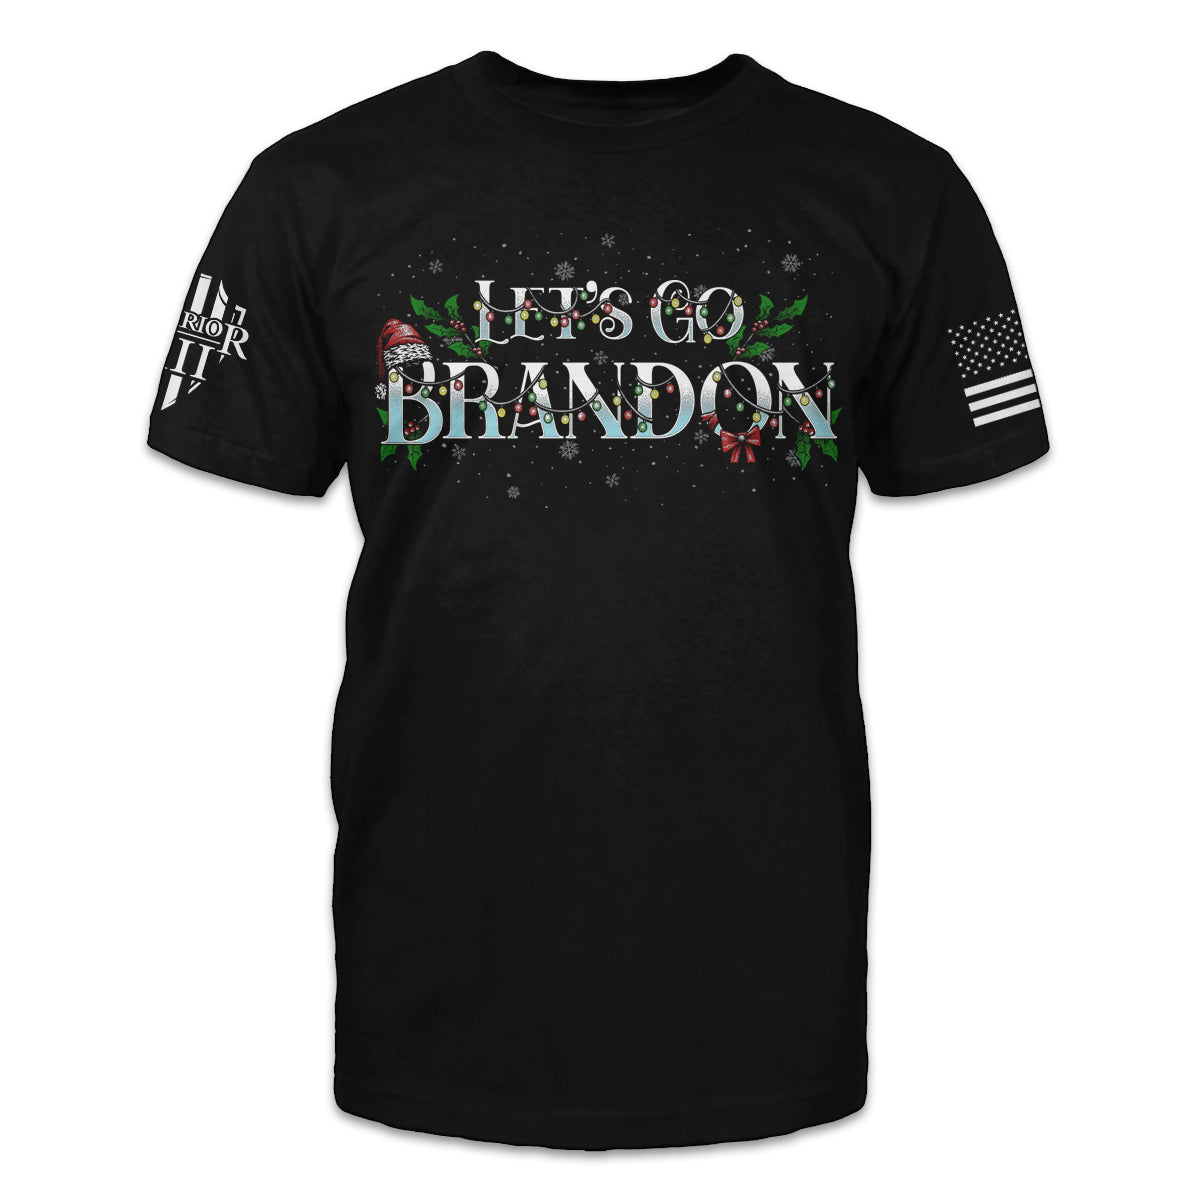 Let's Go Brandon - Warrior 12 - A Patriotic Apparel Company